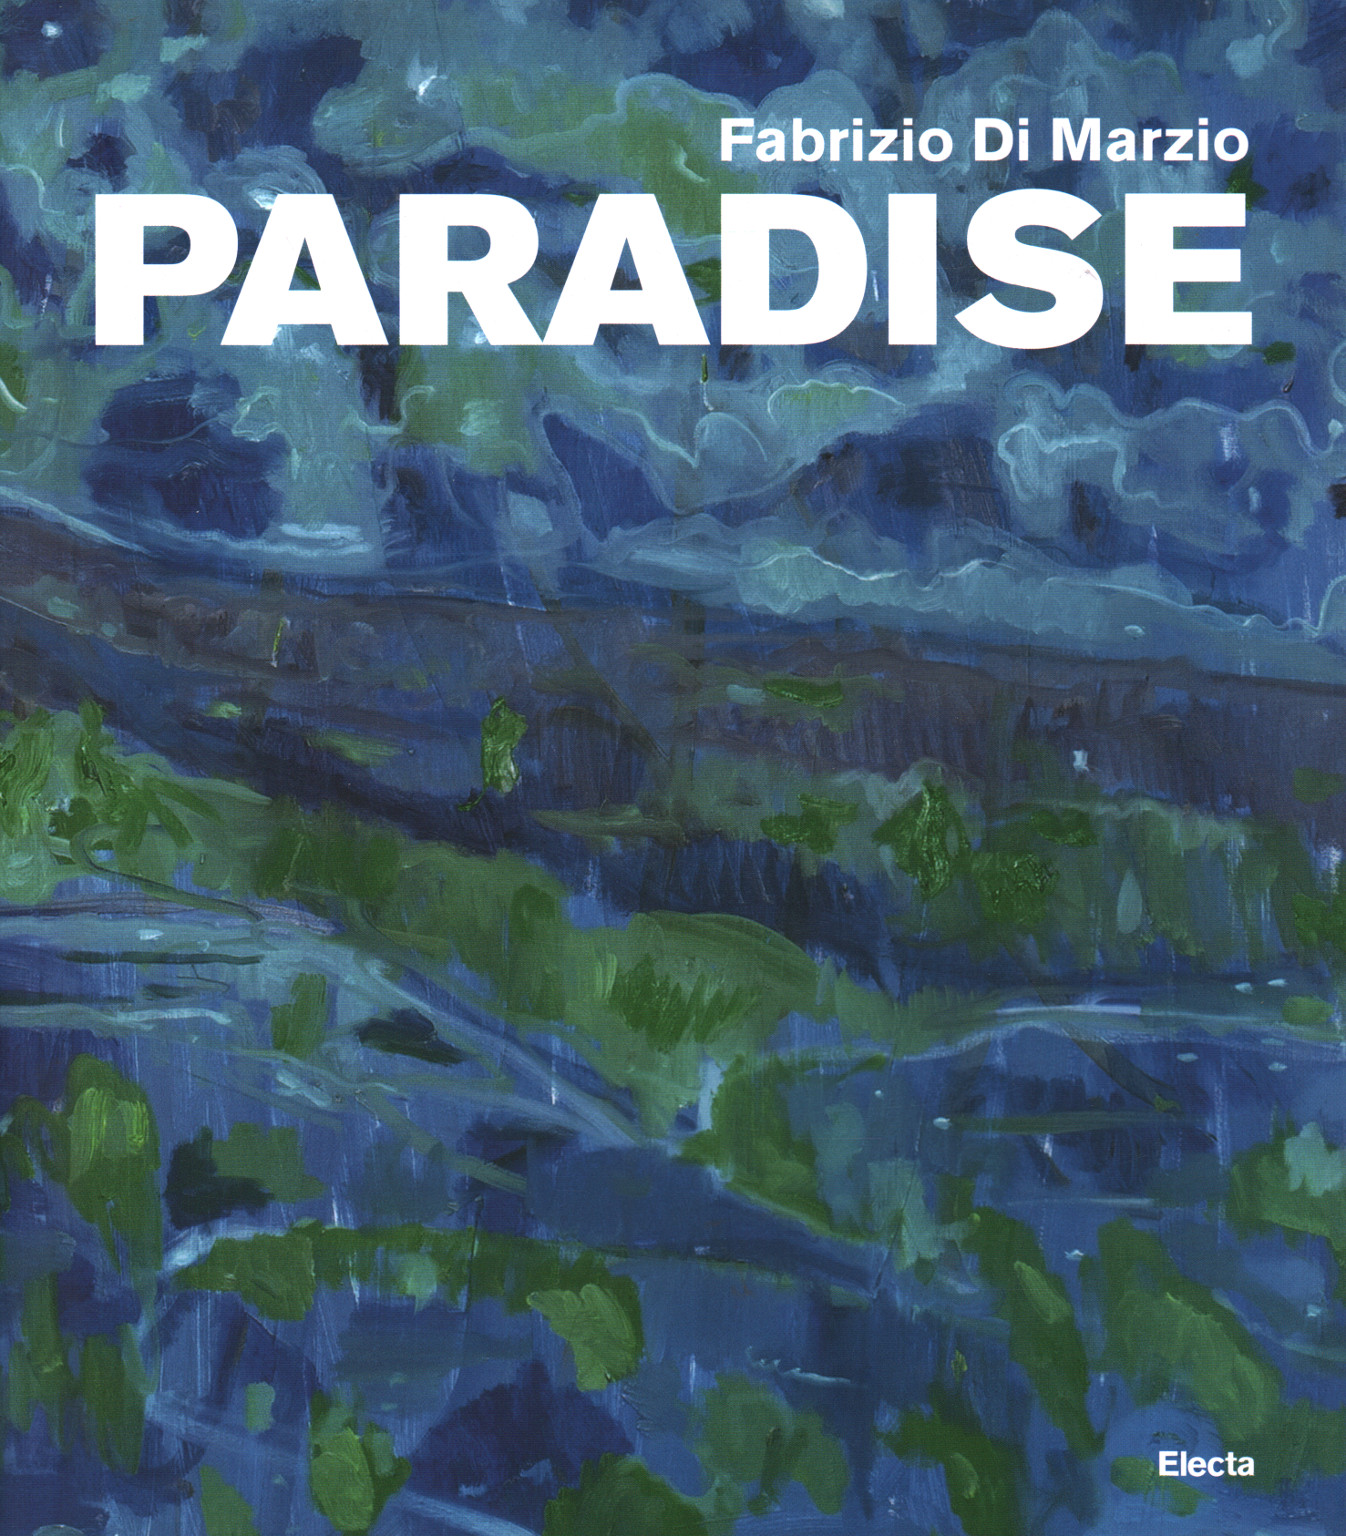 Fabrizio Di Marzio. Paradise, s.a.